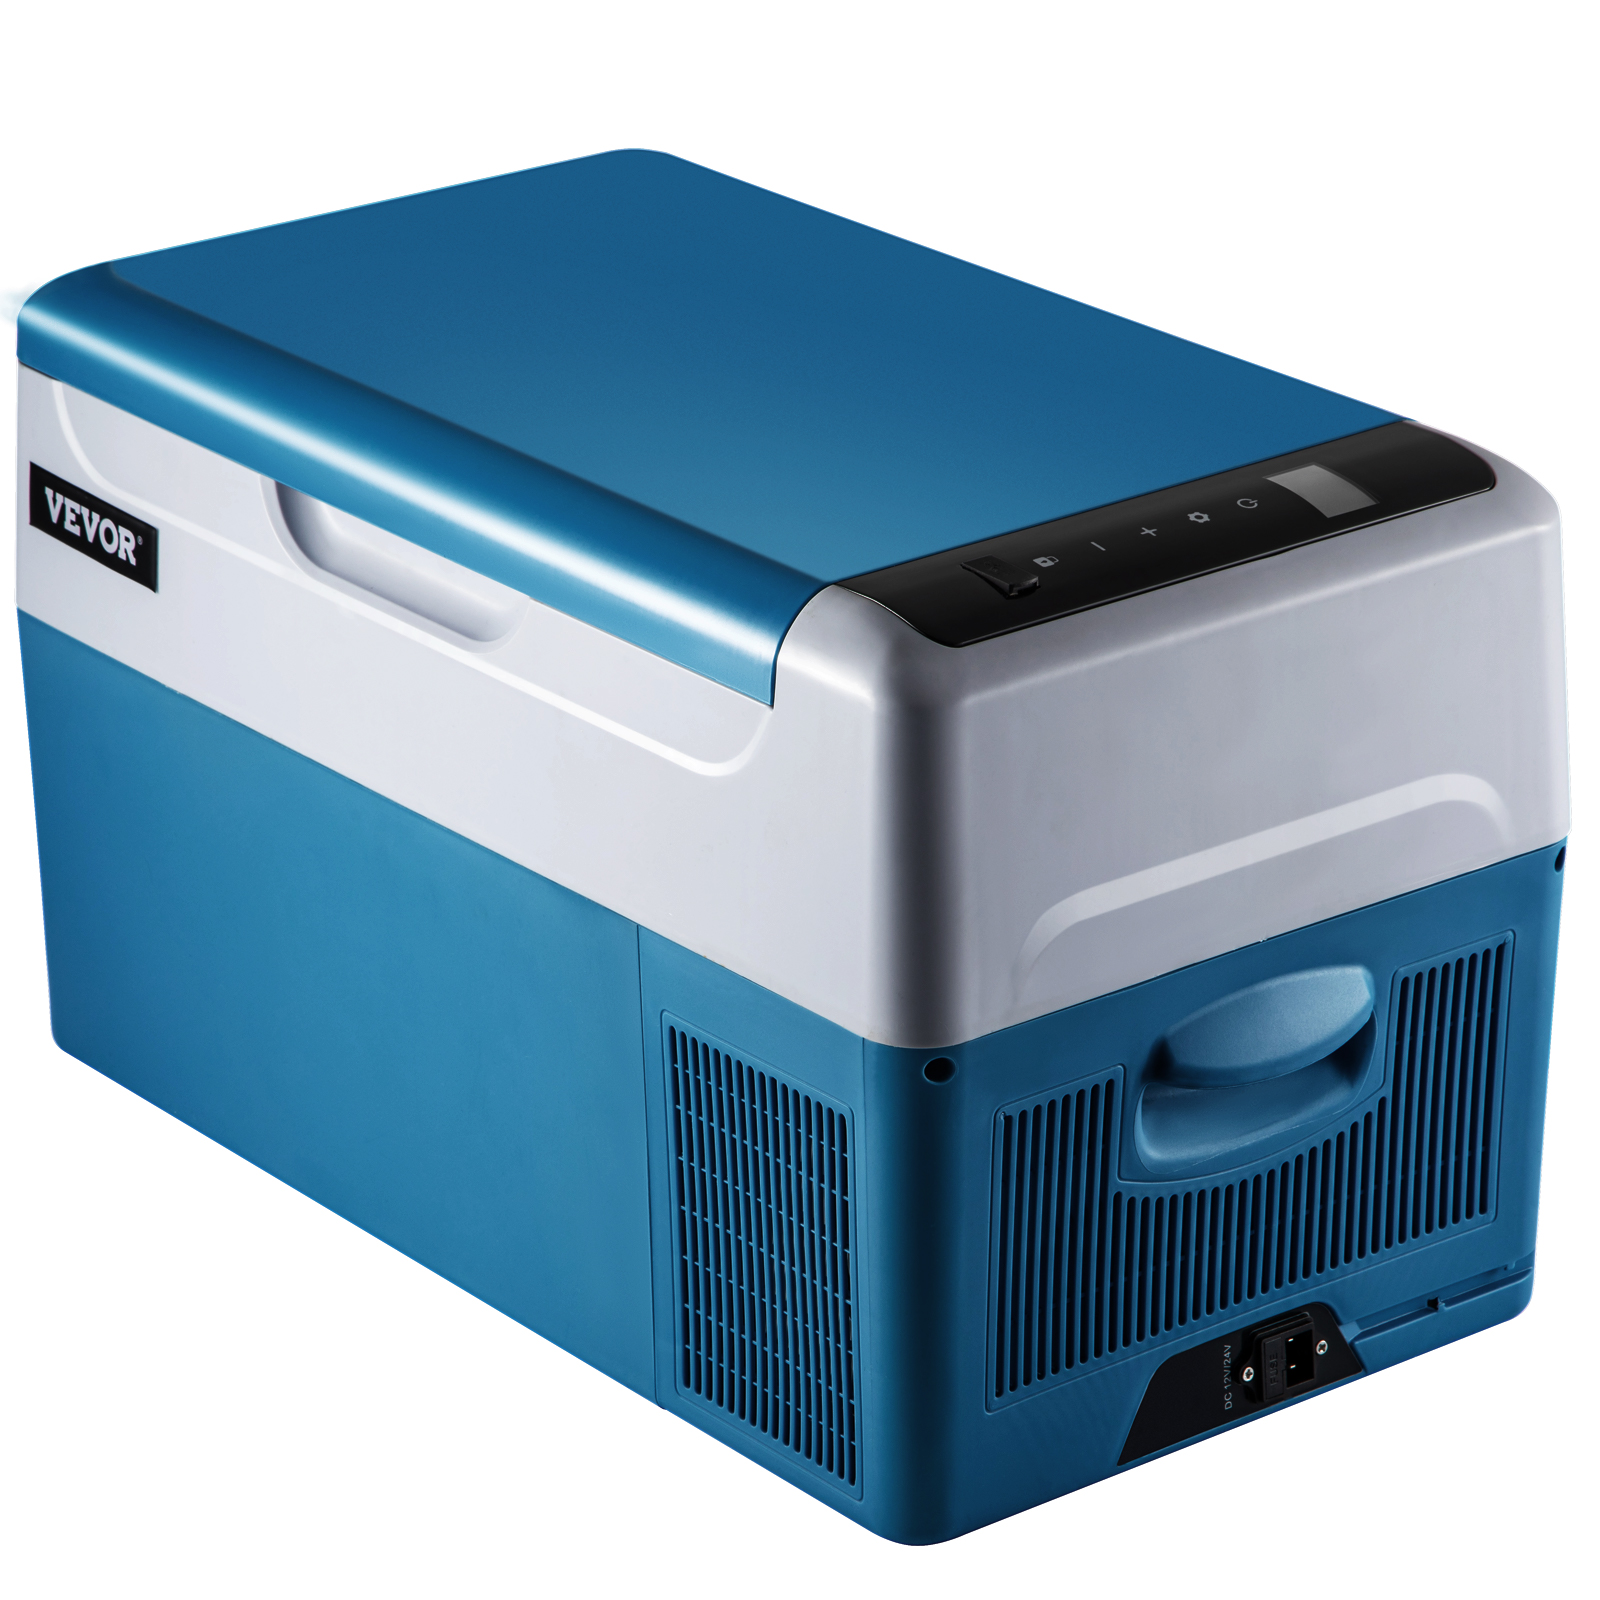 portable freezer,37.5 Qt,fast cooling